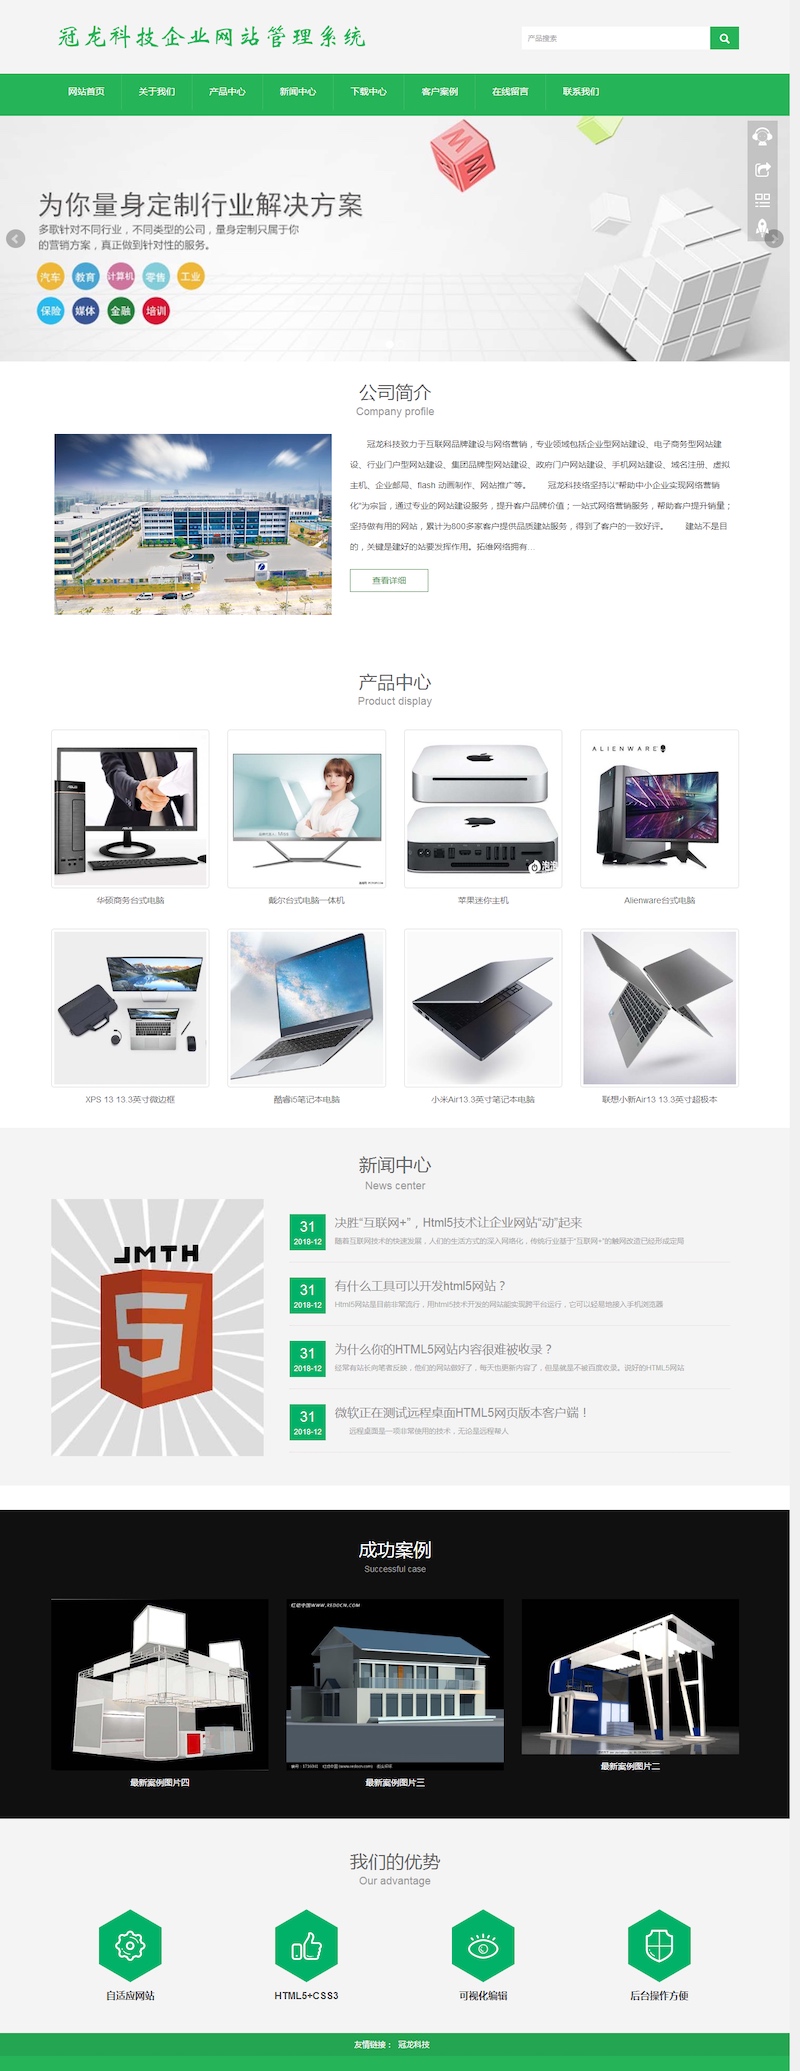 【免费源码】冠龙科技企业网站管理系统V3.0